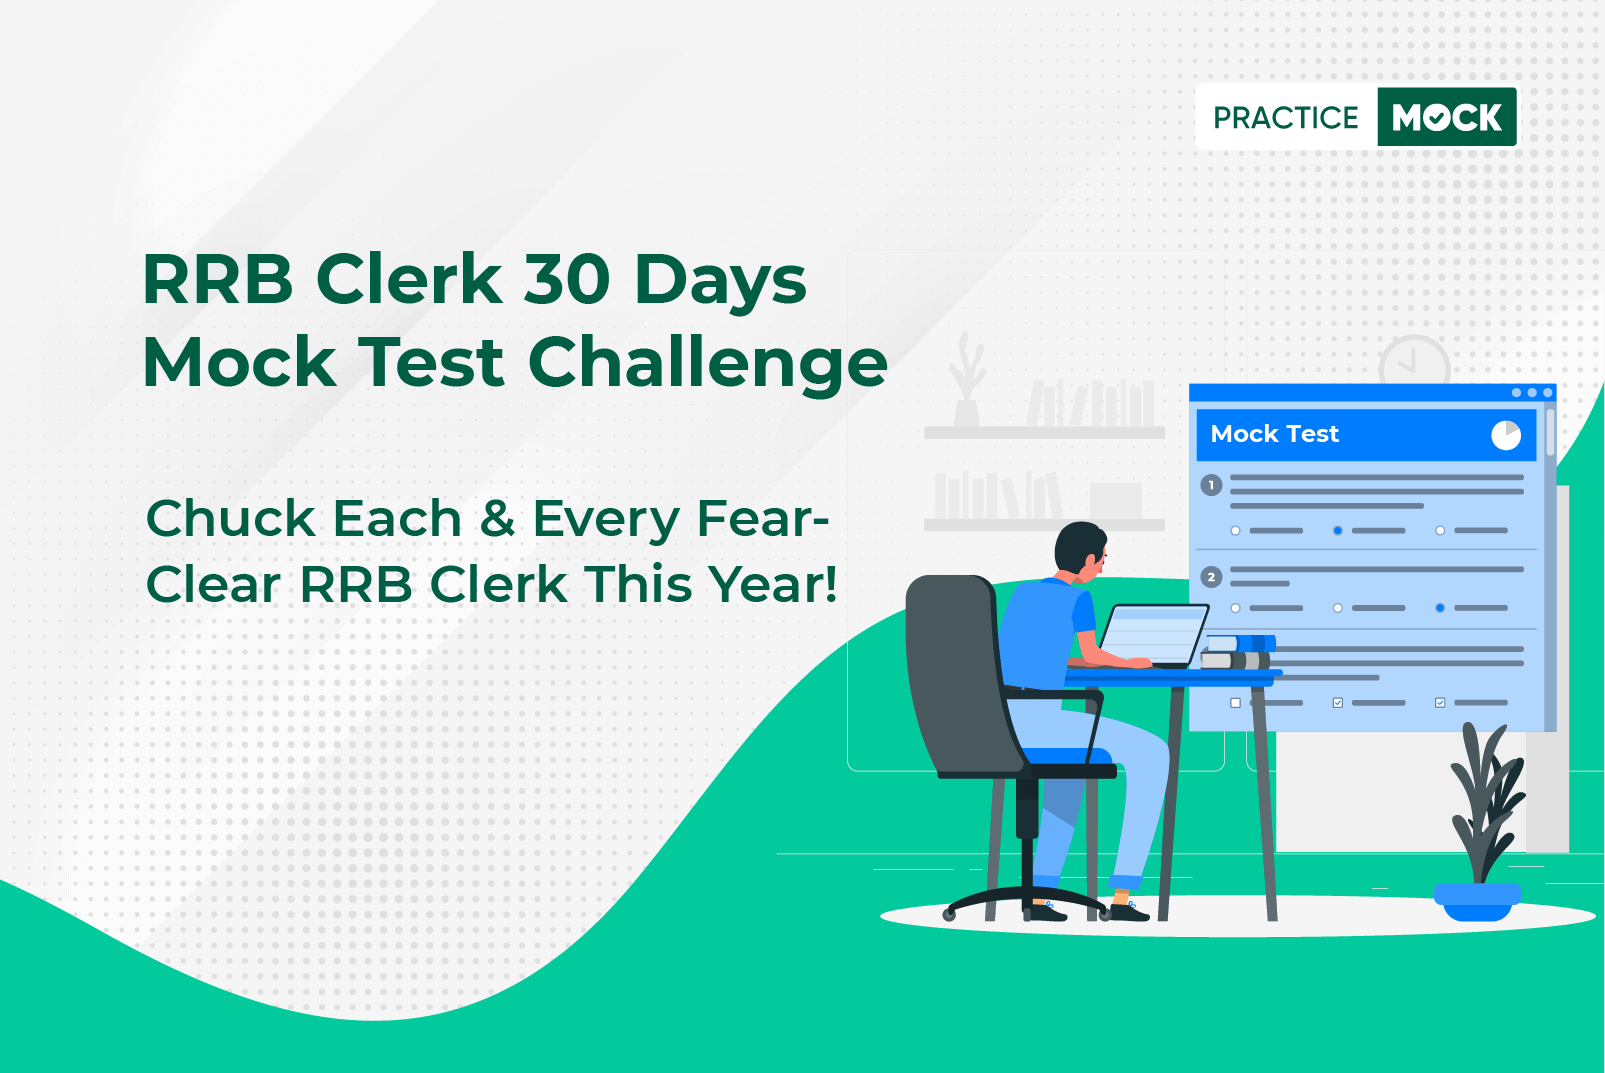 RRB Clerk 30 Days Mock Test Challenge